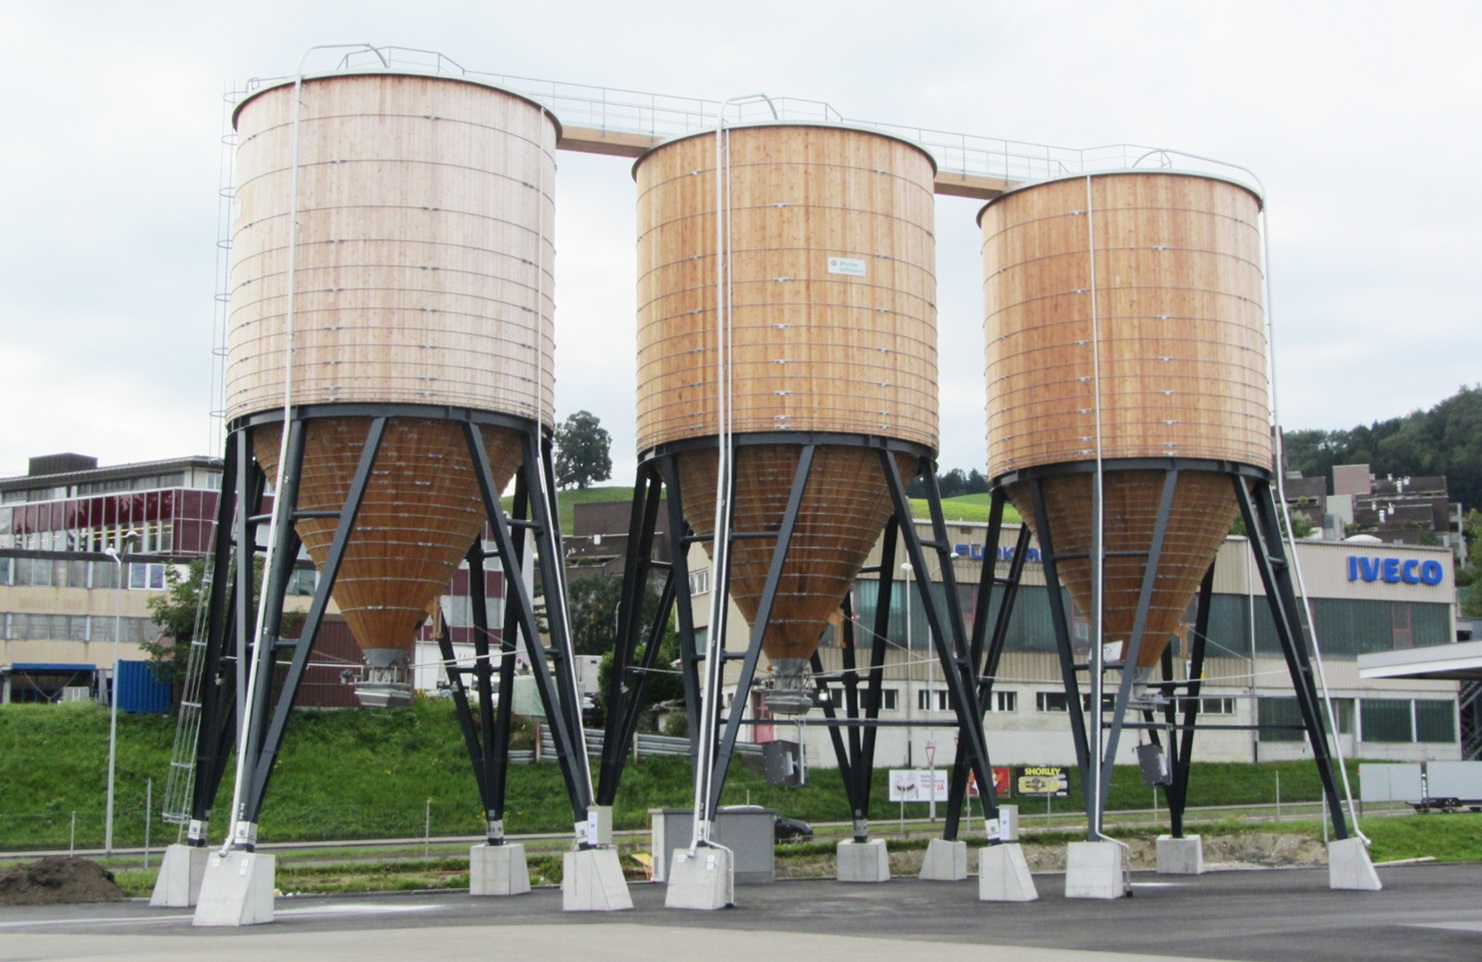 Grands silos ronds en bois d'un volume de 400m3 chacun à St. Gallen Neudorf